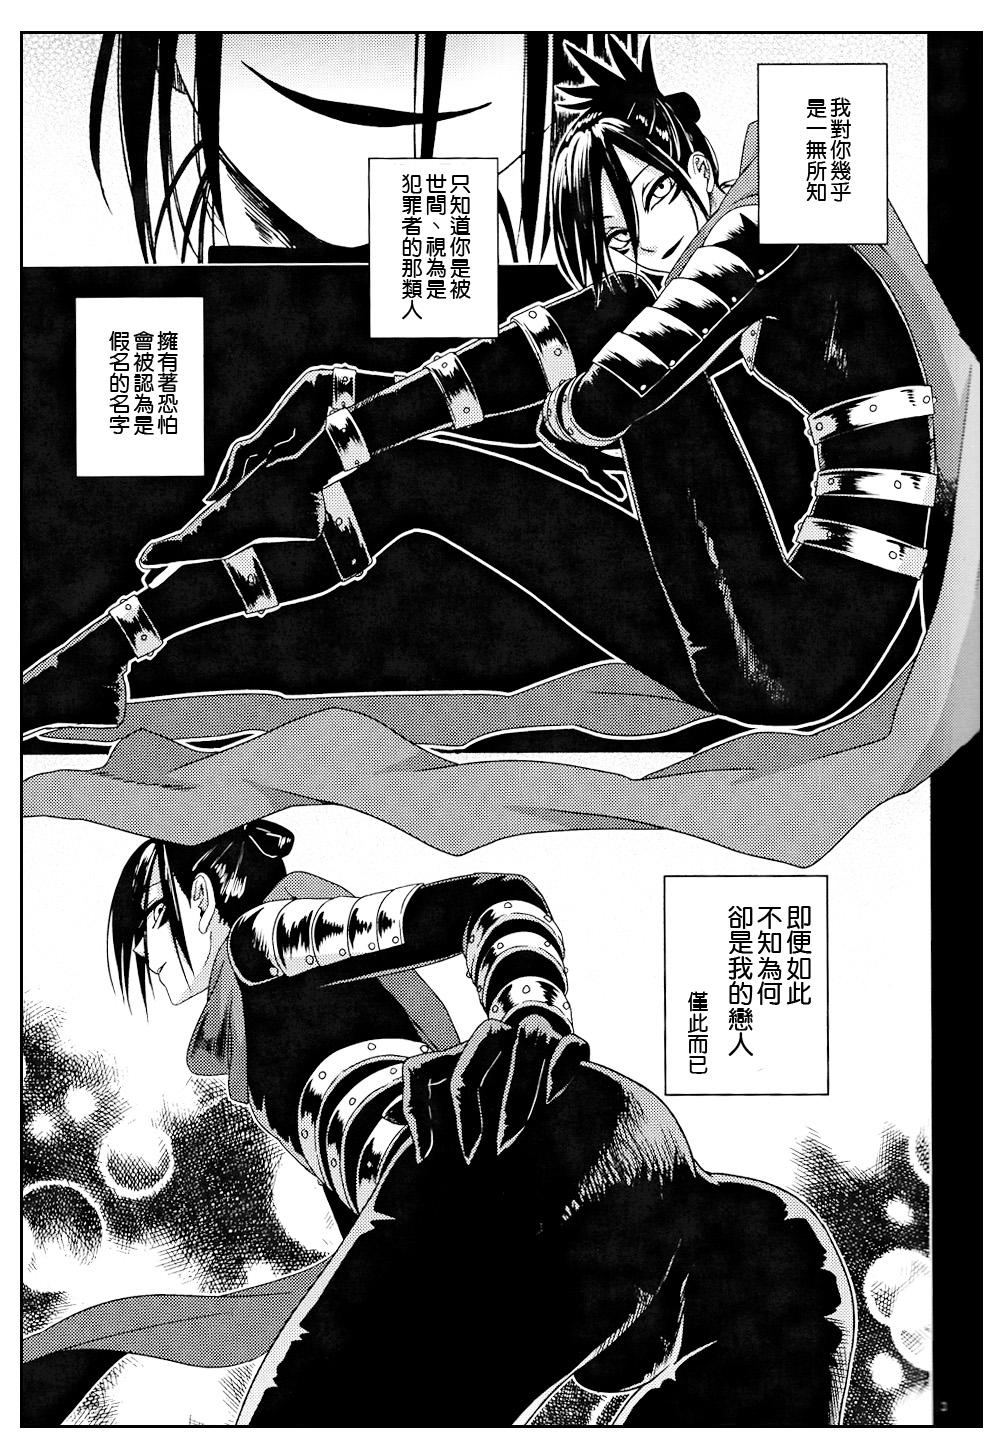 Foot Worship Mobukare Honsoku - One punch man 4some - Page 2